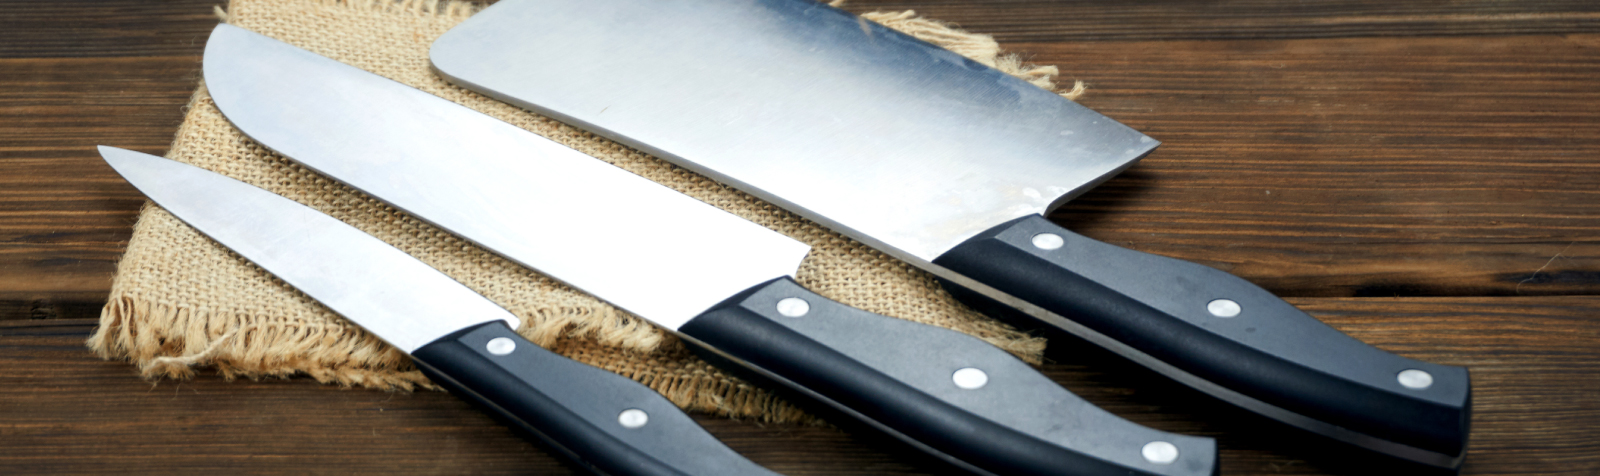 Diferentes tipos de facas e suas funções